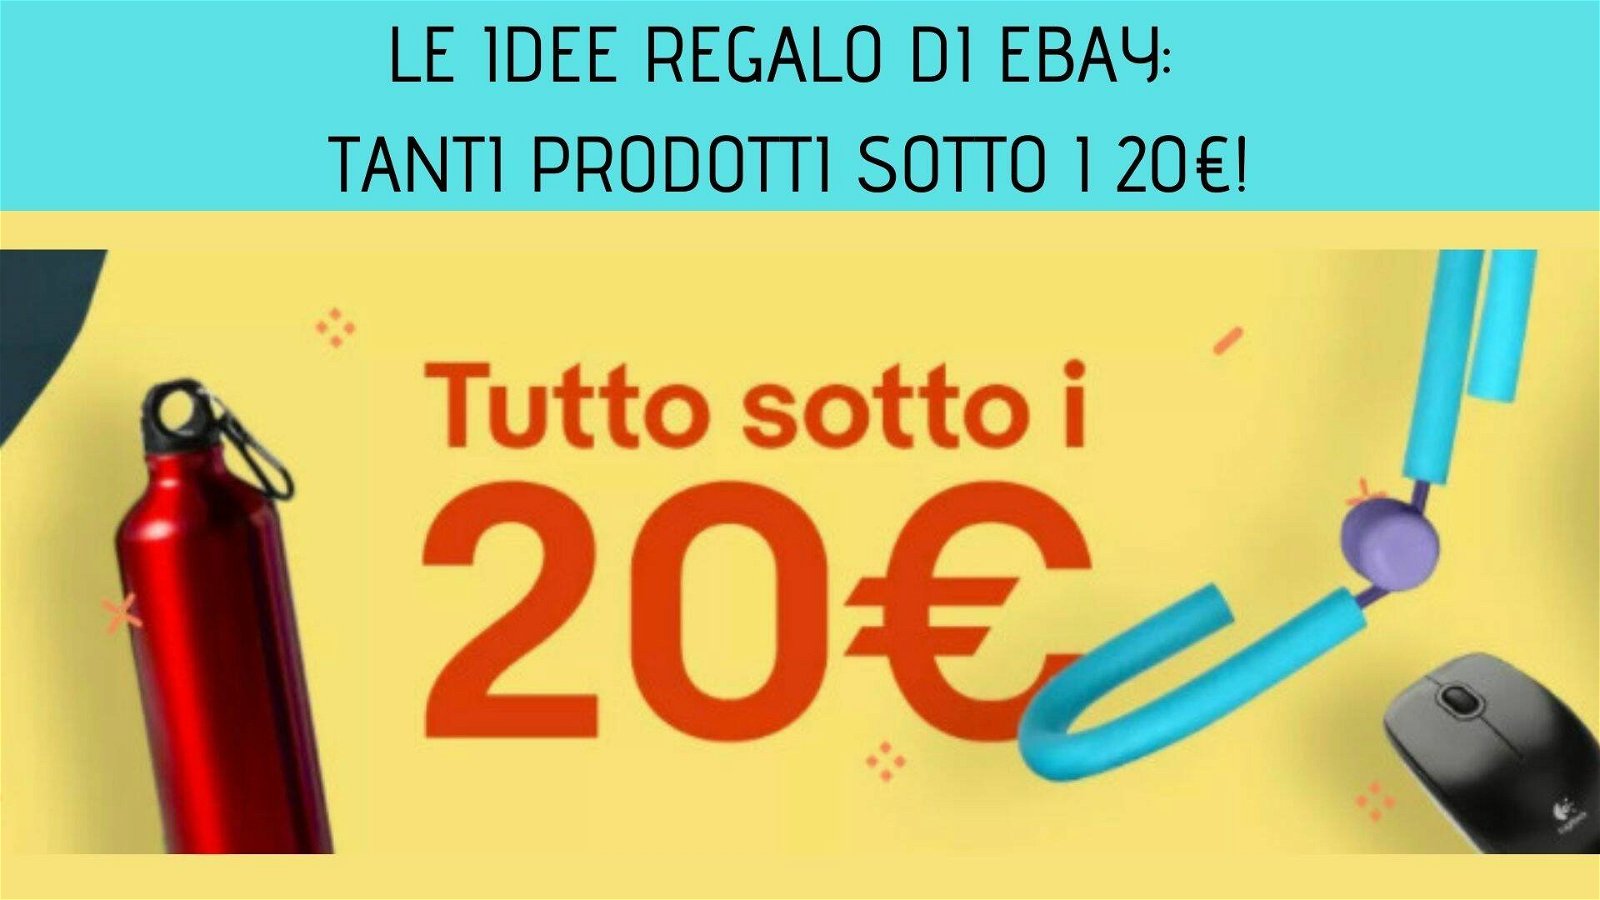 Immagine di Le idee regalo di eBay: tanti prodotti sotto i 20€!